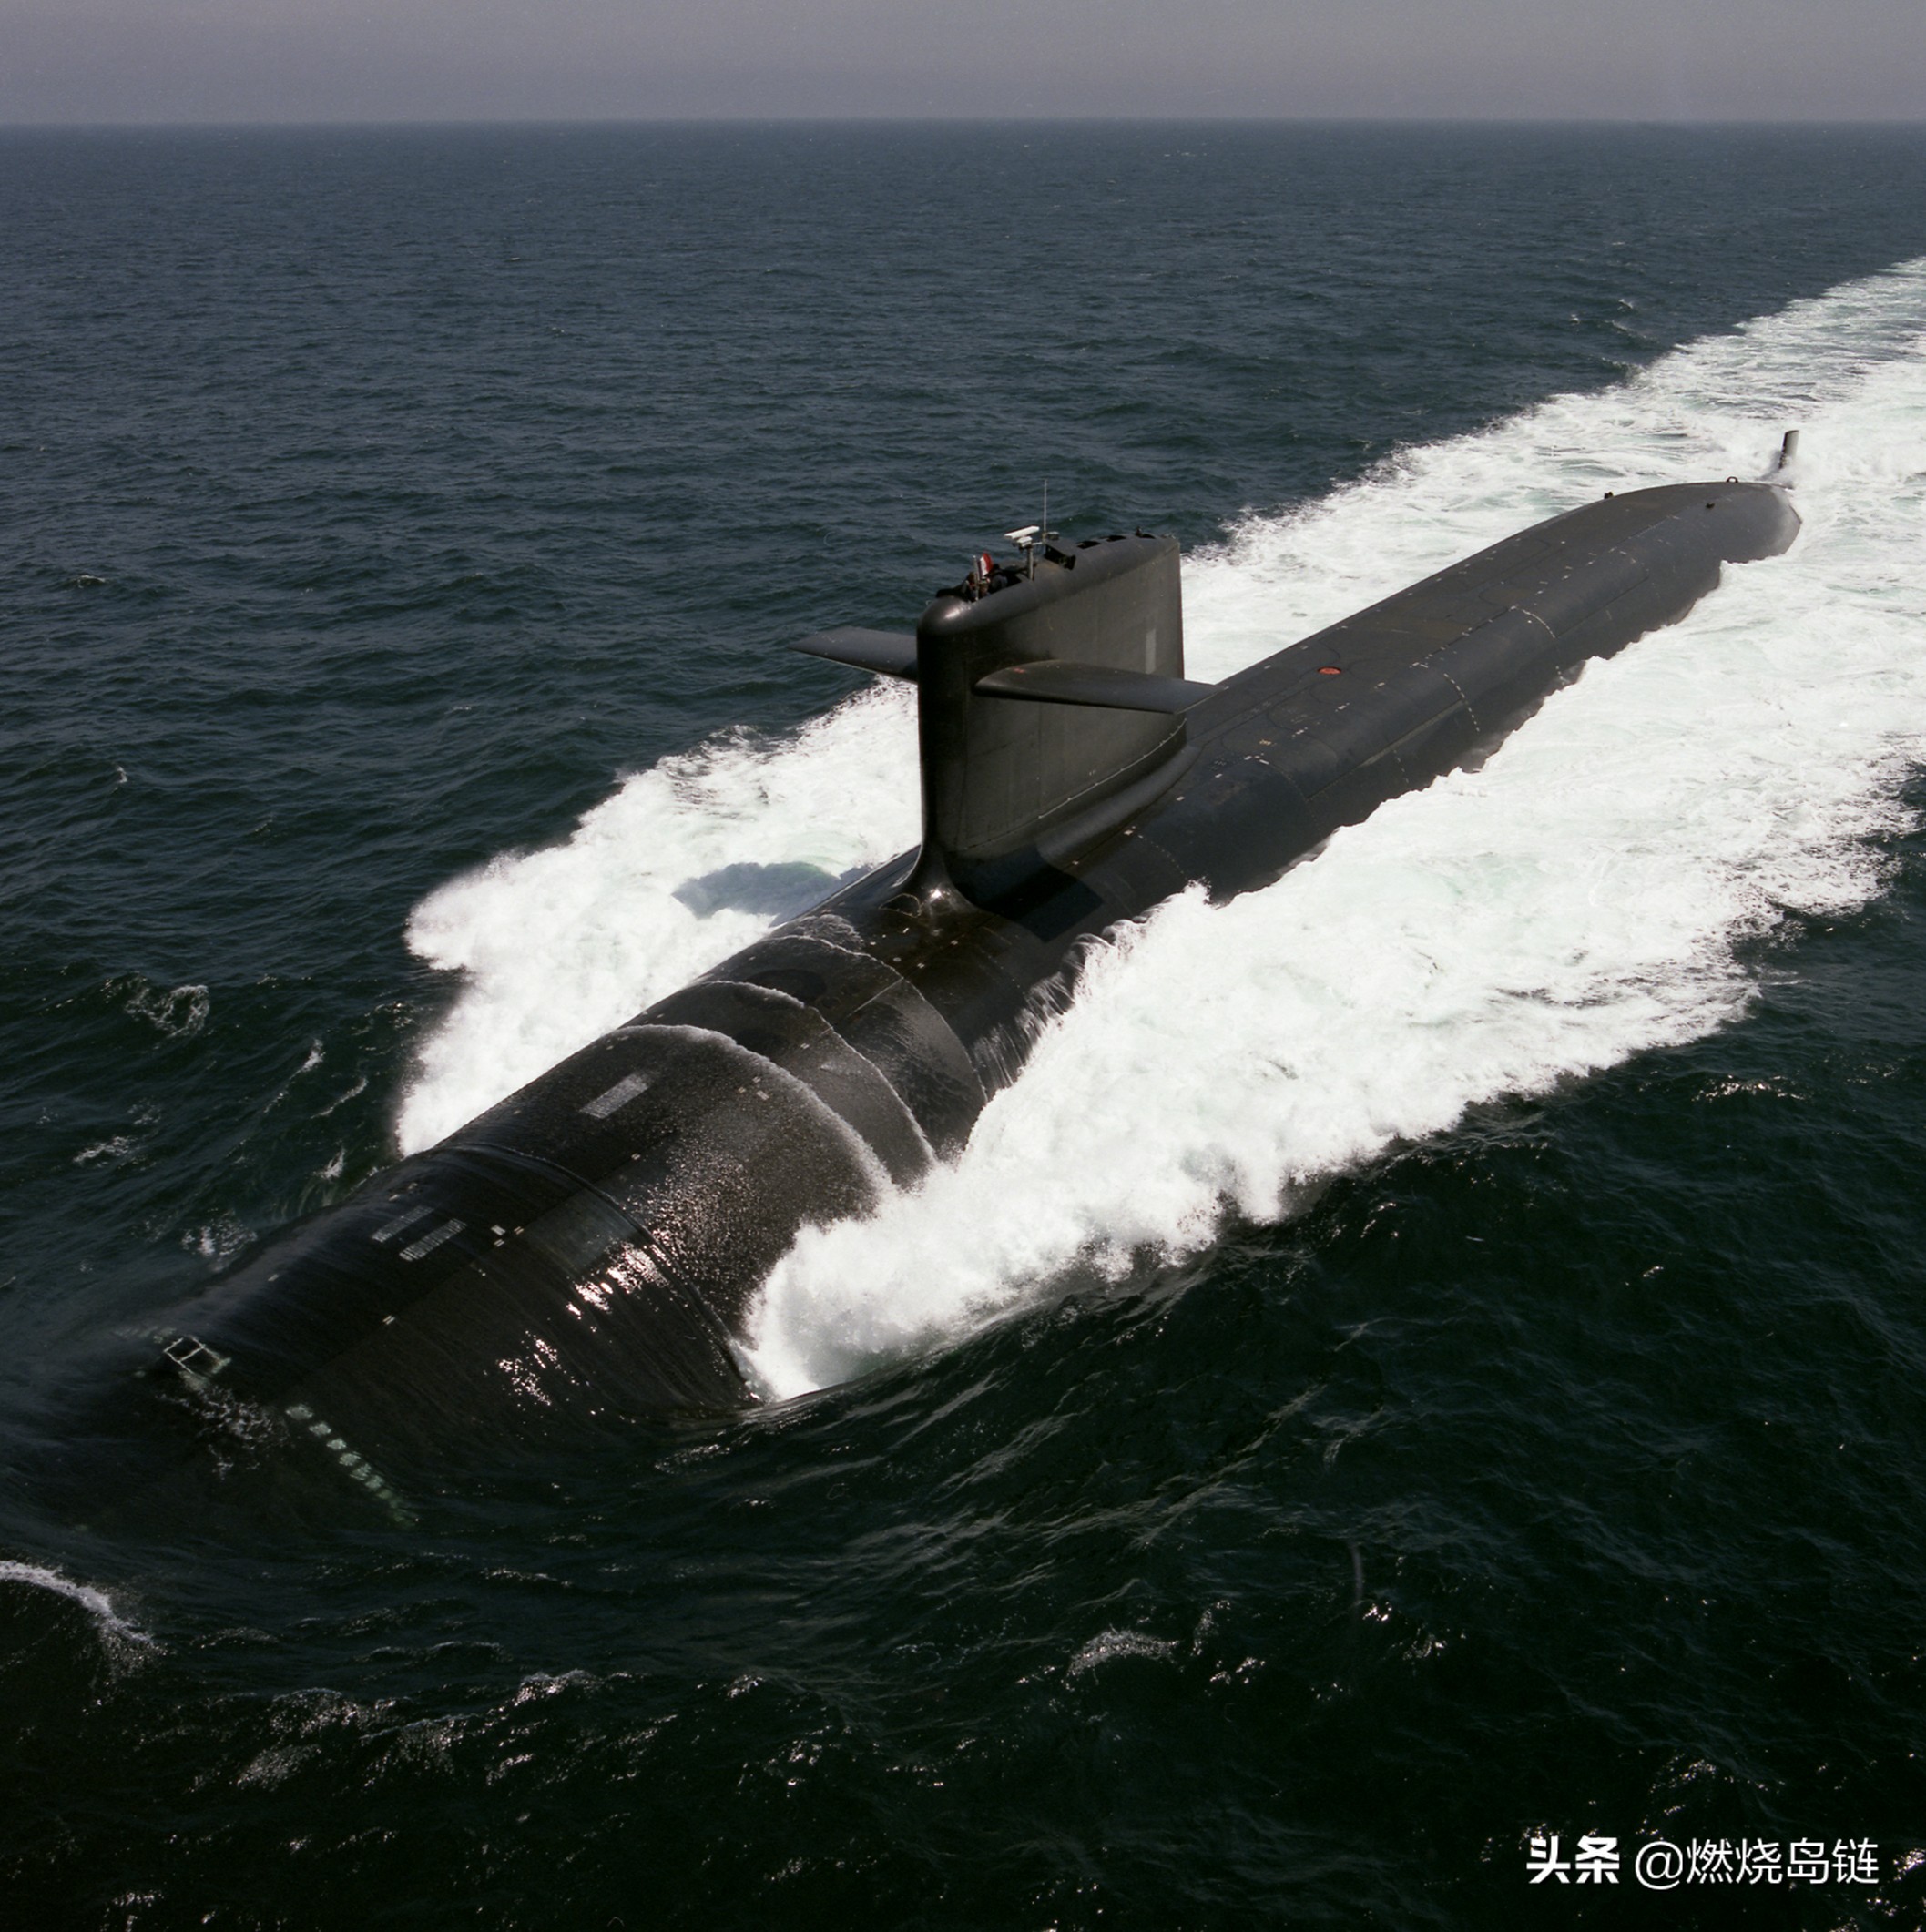 凯旋级战略核潜艇法国大国地位的保障核力量的基石